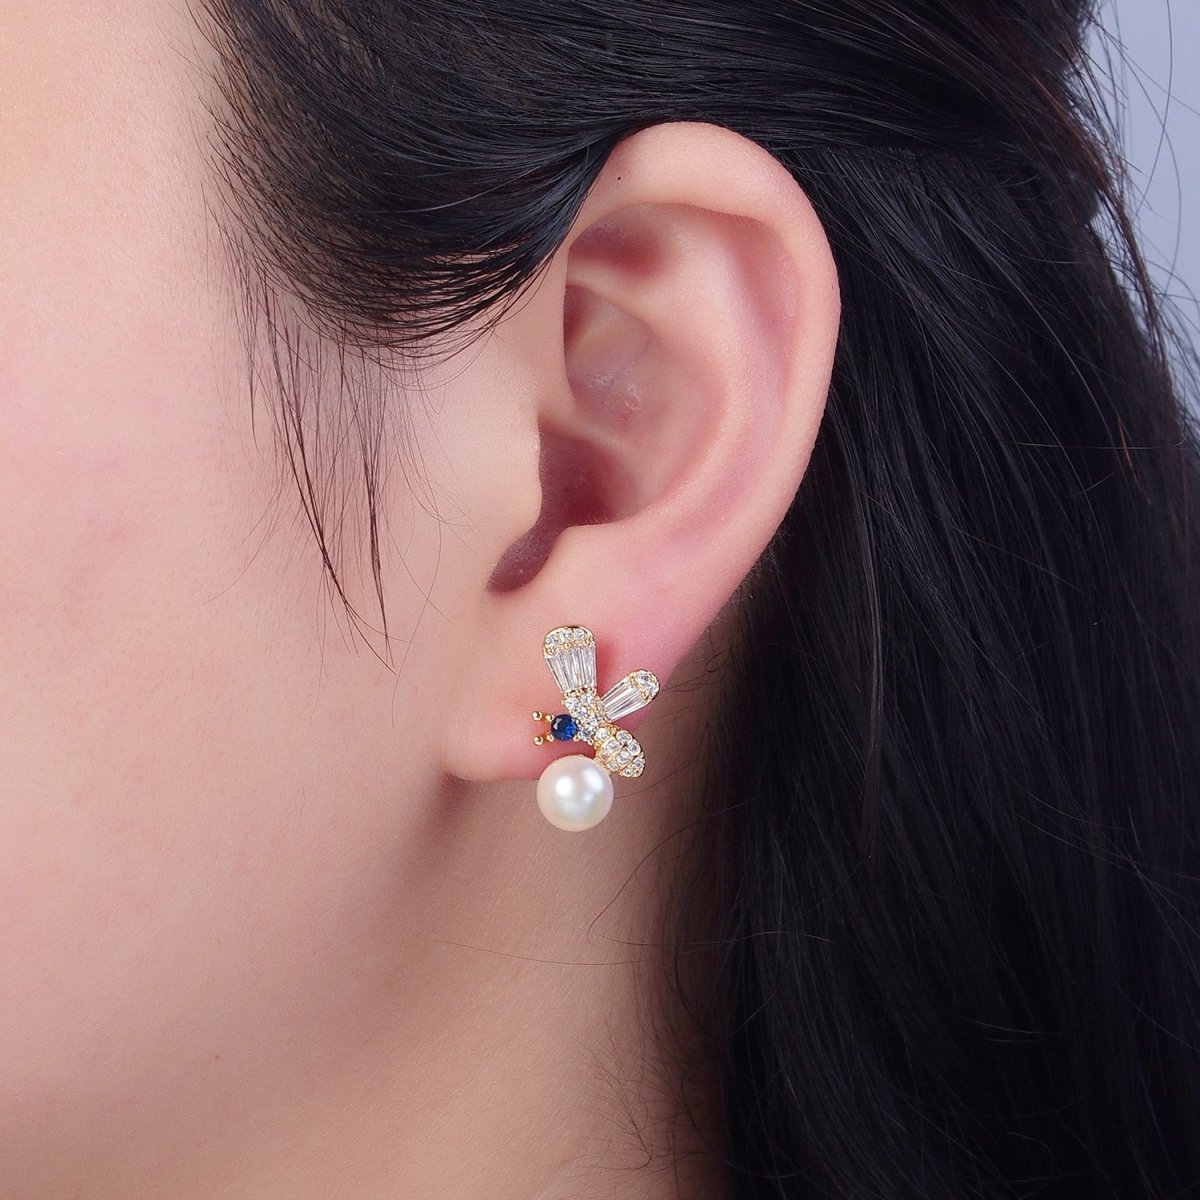 Gold Bee Earrings - Pearl Stud earrings - Minimalist Earrings - Fashion Earrings - Dainty Jewelry V-374 - DLUXCA